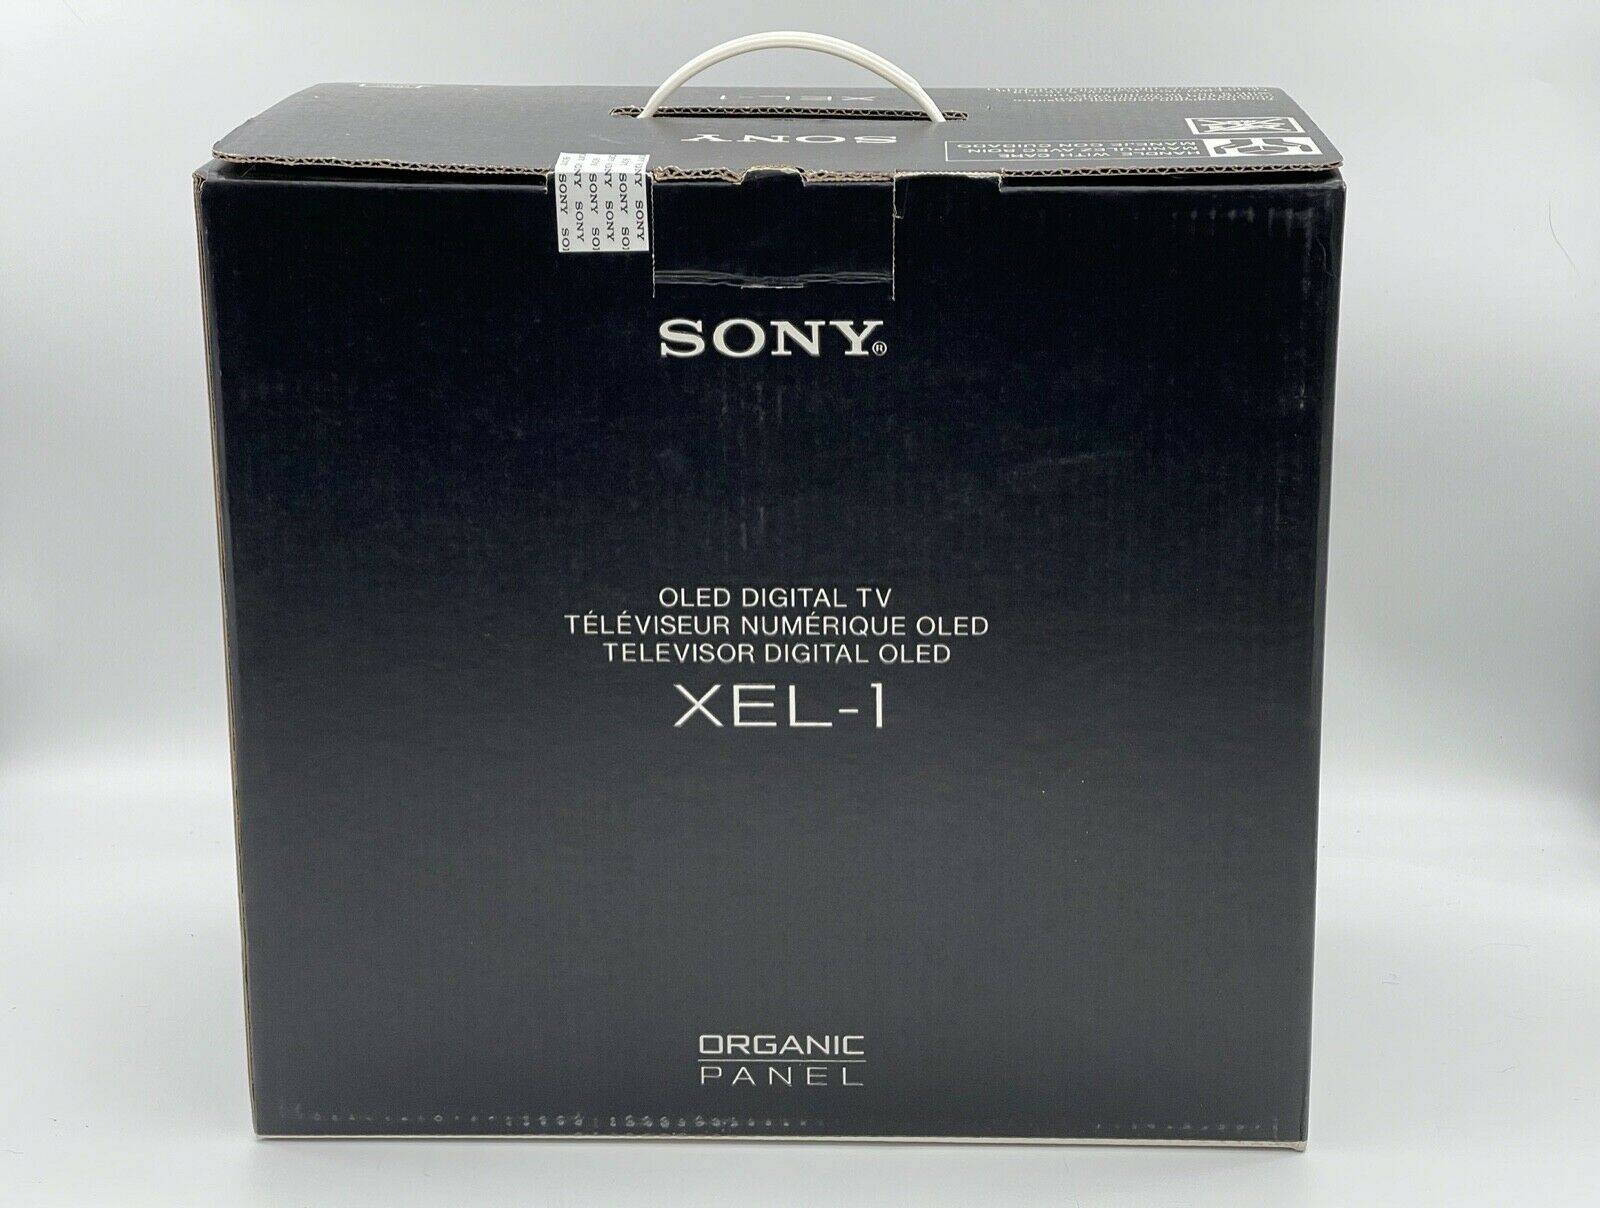 תמונה 2 ,סוני XEL-1 OLED TV - חדש, בקופ למכירה בירושלים מוצרי חשמל  טלוויזיות